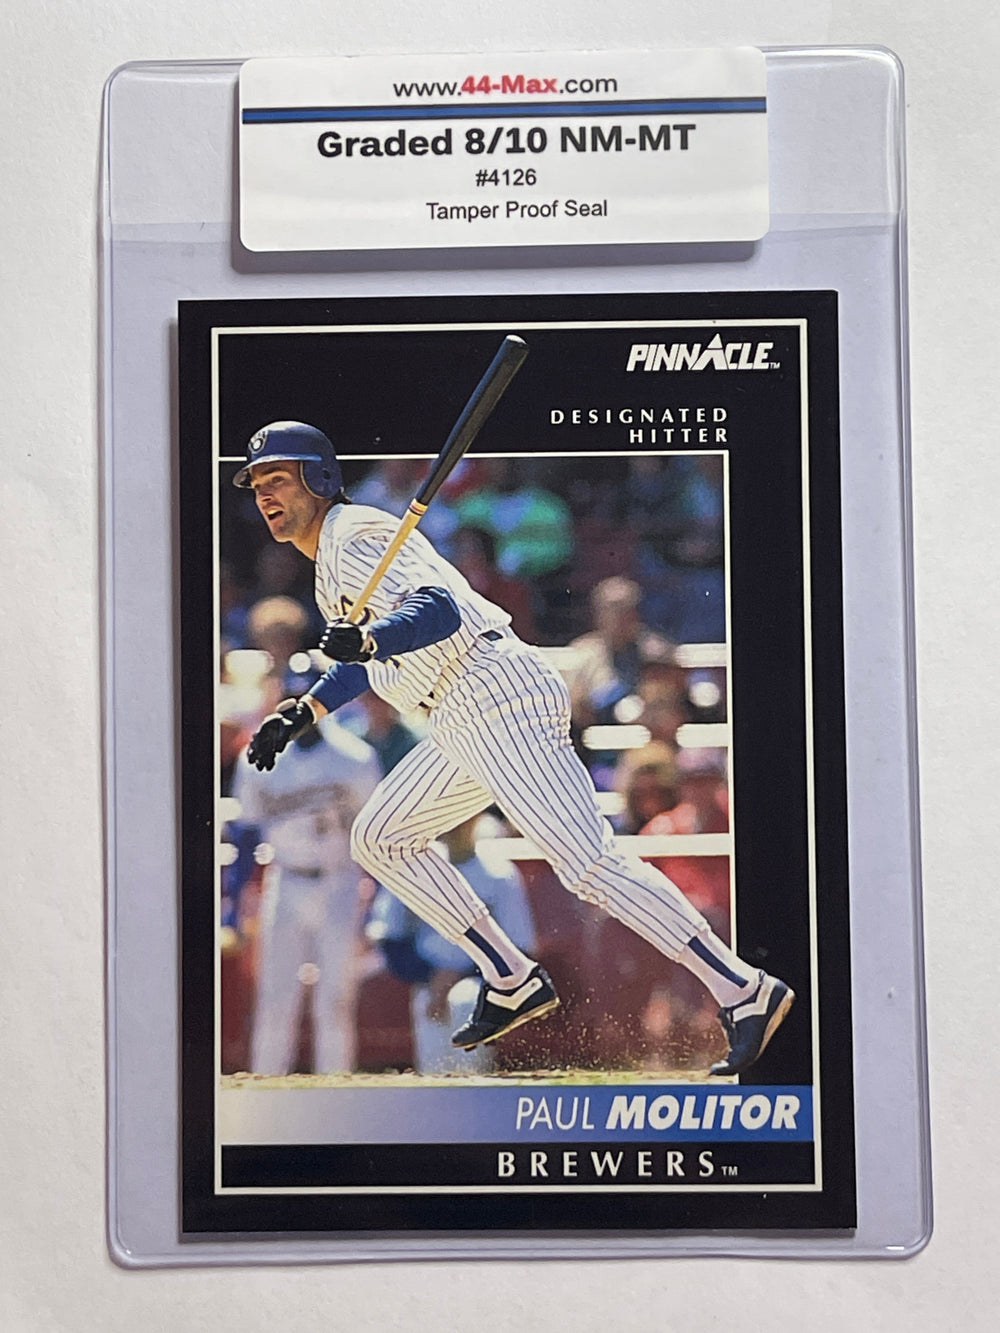 Paul Molitor 1992 Pinnacle Baseball Card. 44-Max 8/10 Mint #4126